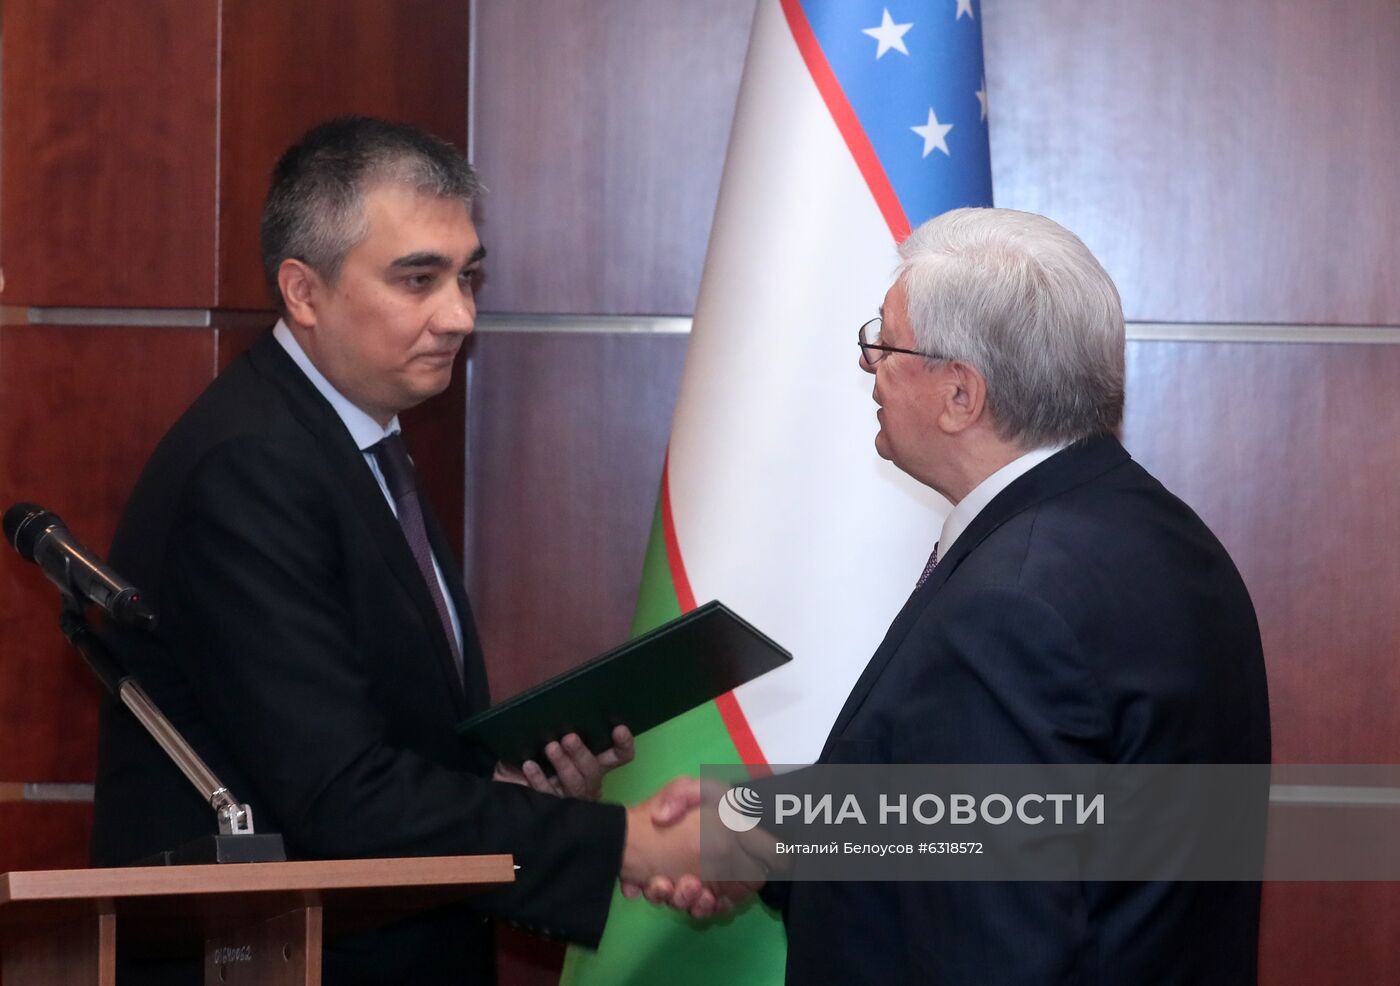 Ректор МГИМО А. Торкунов награжден орденом "Дружбы" Узбекистана